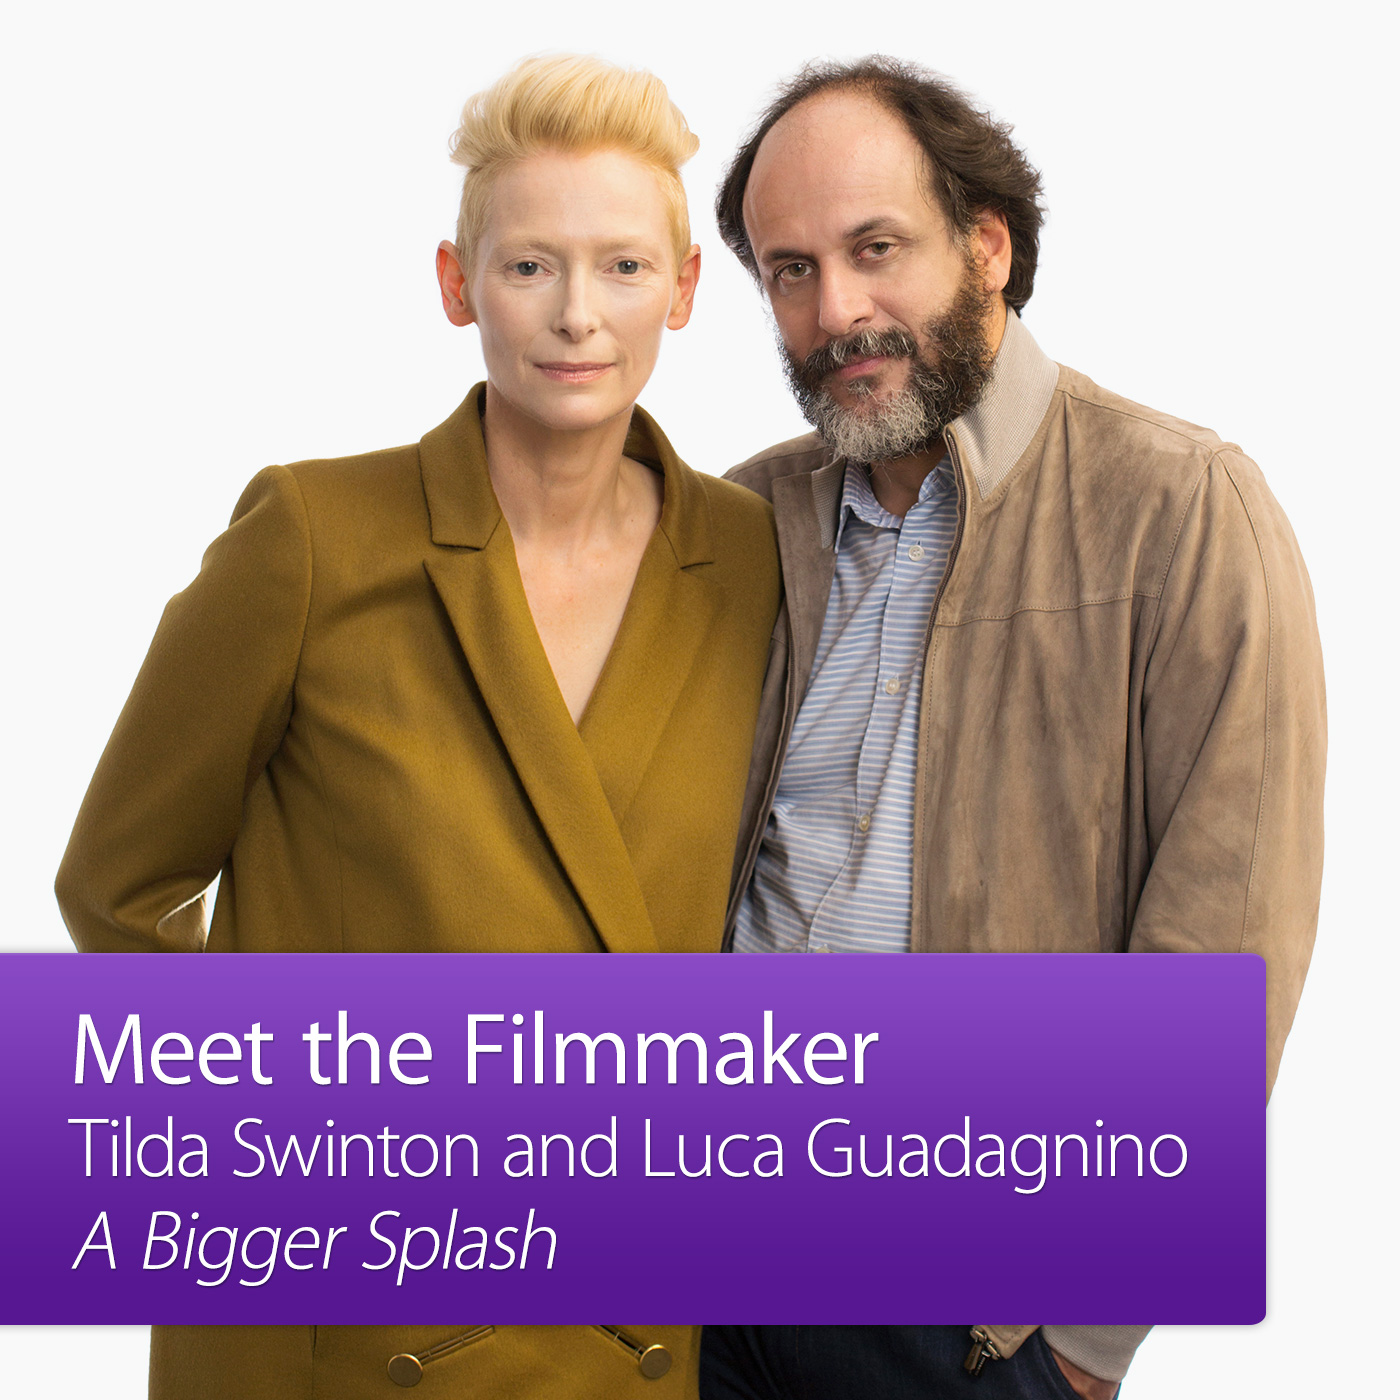 A Bigger Splash: Meet the Filmmaker